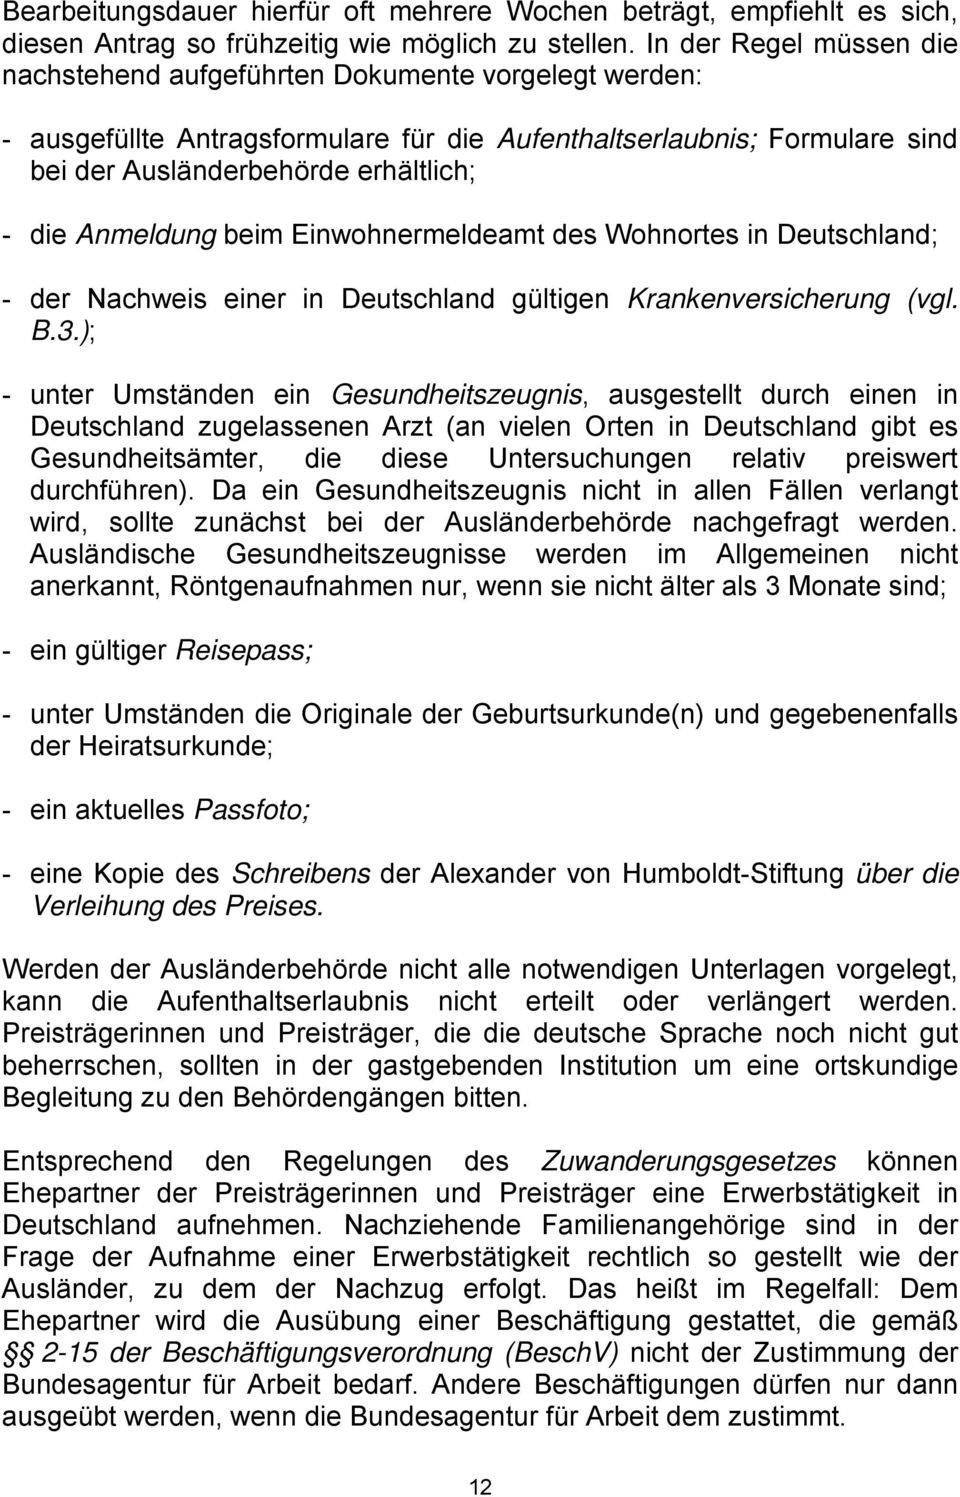 Anmeldung beim Einwohnermeldeamt des Wohnortes in Deutschland; - der Nachweis einer in Deutschland gültigen Krankenversicherung (vgl. B.3.